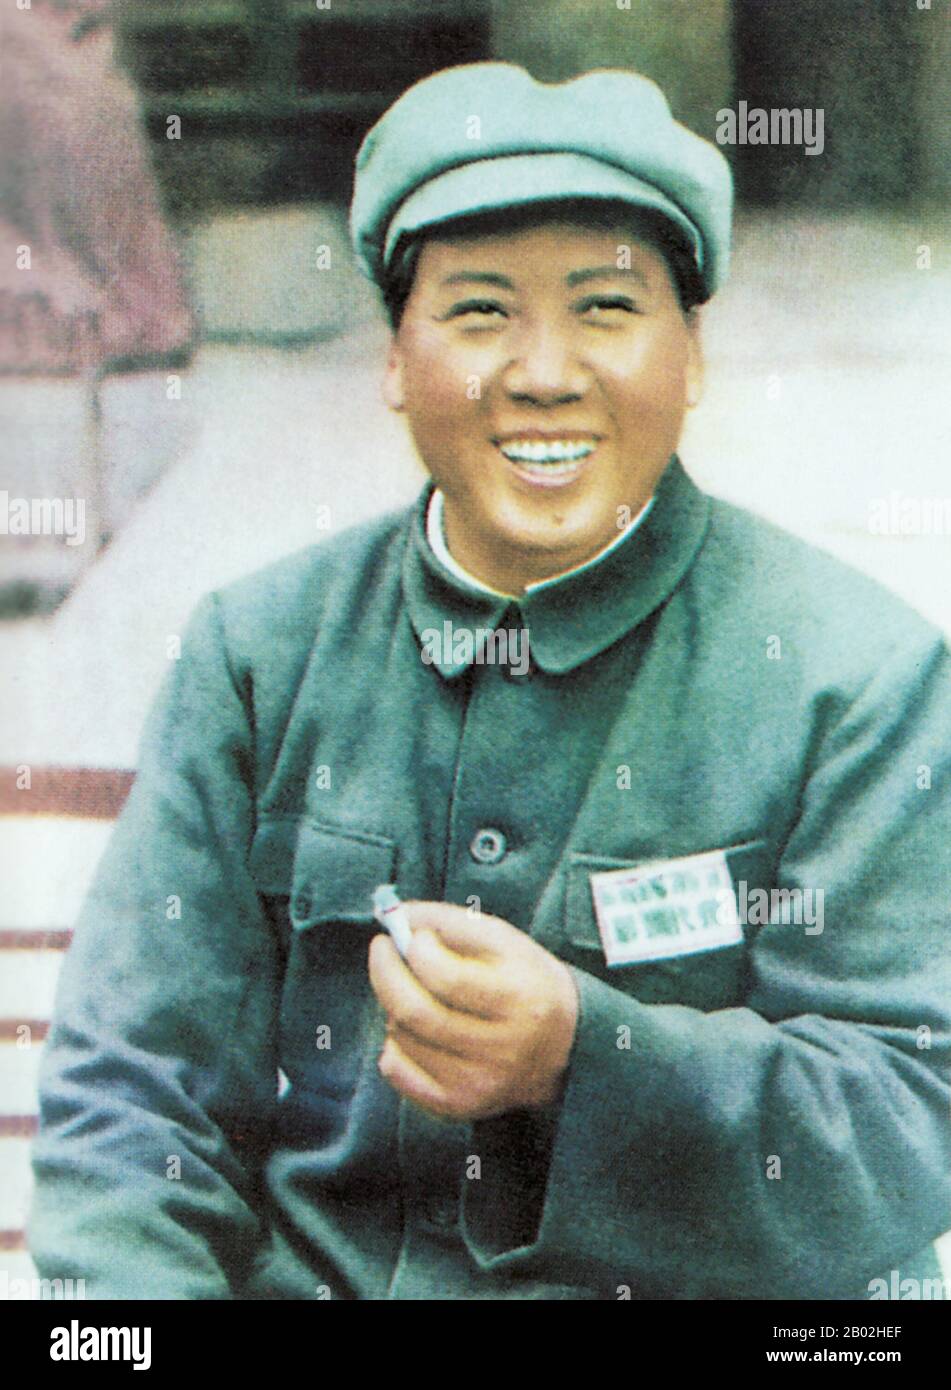 Mao Zedong, également translittéré comme Mao Tse-tung (26 décembre 1893 – 9 septembre 1976), était un révolutionnaire communiste chinois, un stratège de guérilla, un auteur, un théoricien politique et un chef de la Révolution chinoise. Communément appelé Président Mao, il était l'architecte de la République Populaire de Chine (RPC) depuis sa création en 1949 et il a exercé un contrôle autoritaire sur la nation jusqu'à sa mort en 1976. Sa contribution théorique au marxisme-léninisme, ainsi que ses stratégies militaires et sa marque de politiques politiques, sont maintenant collectivement connues sous le nom de maoïsme. Banque D'Images